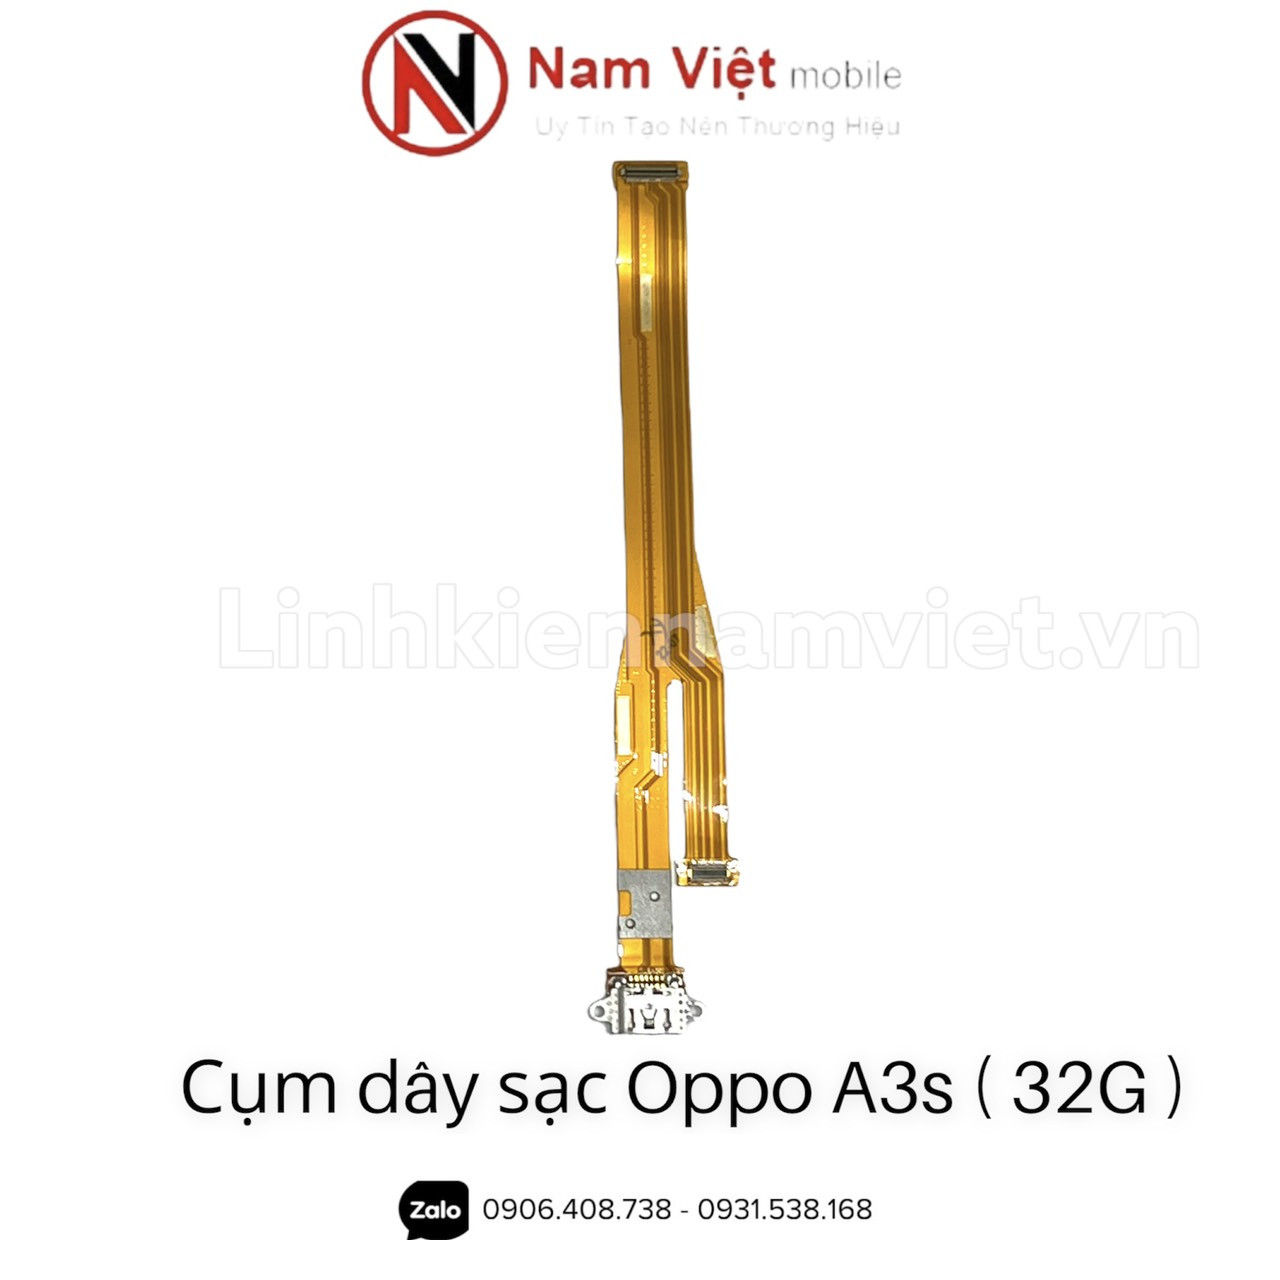 Cum-day-sac-Oppo-A3s-32G